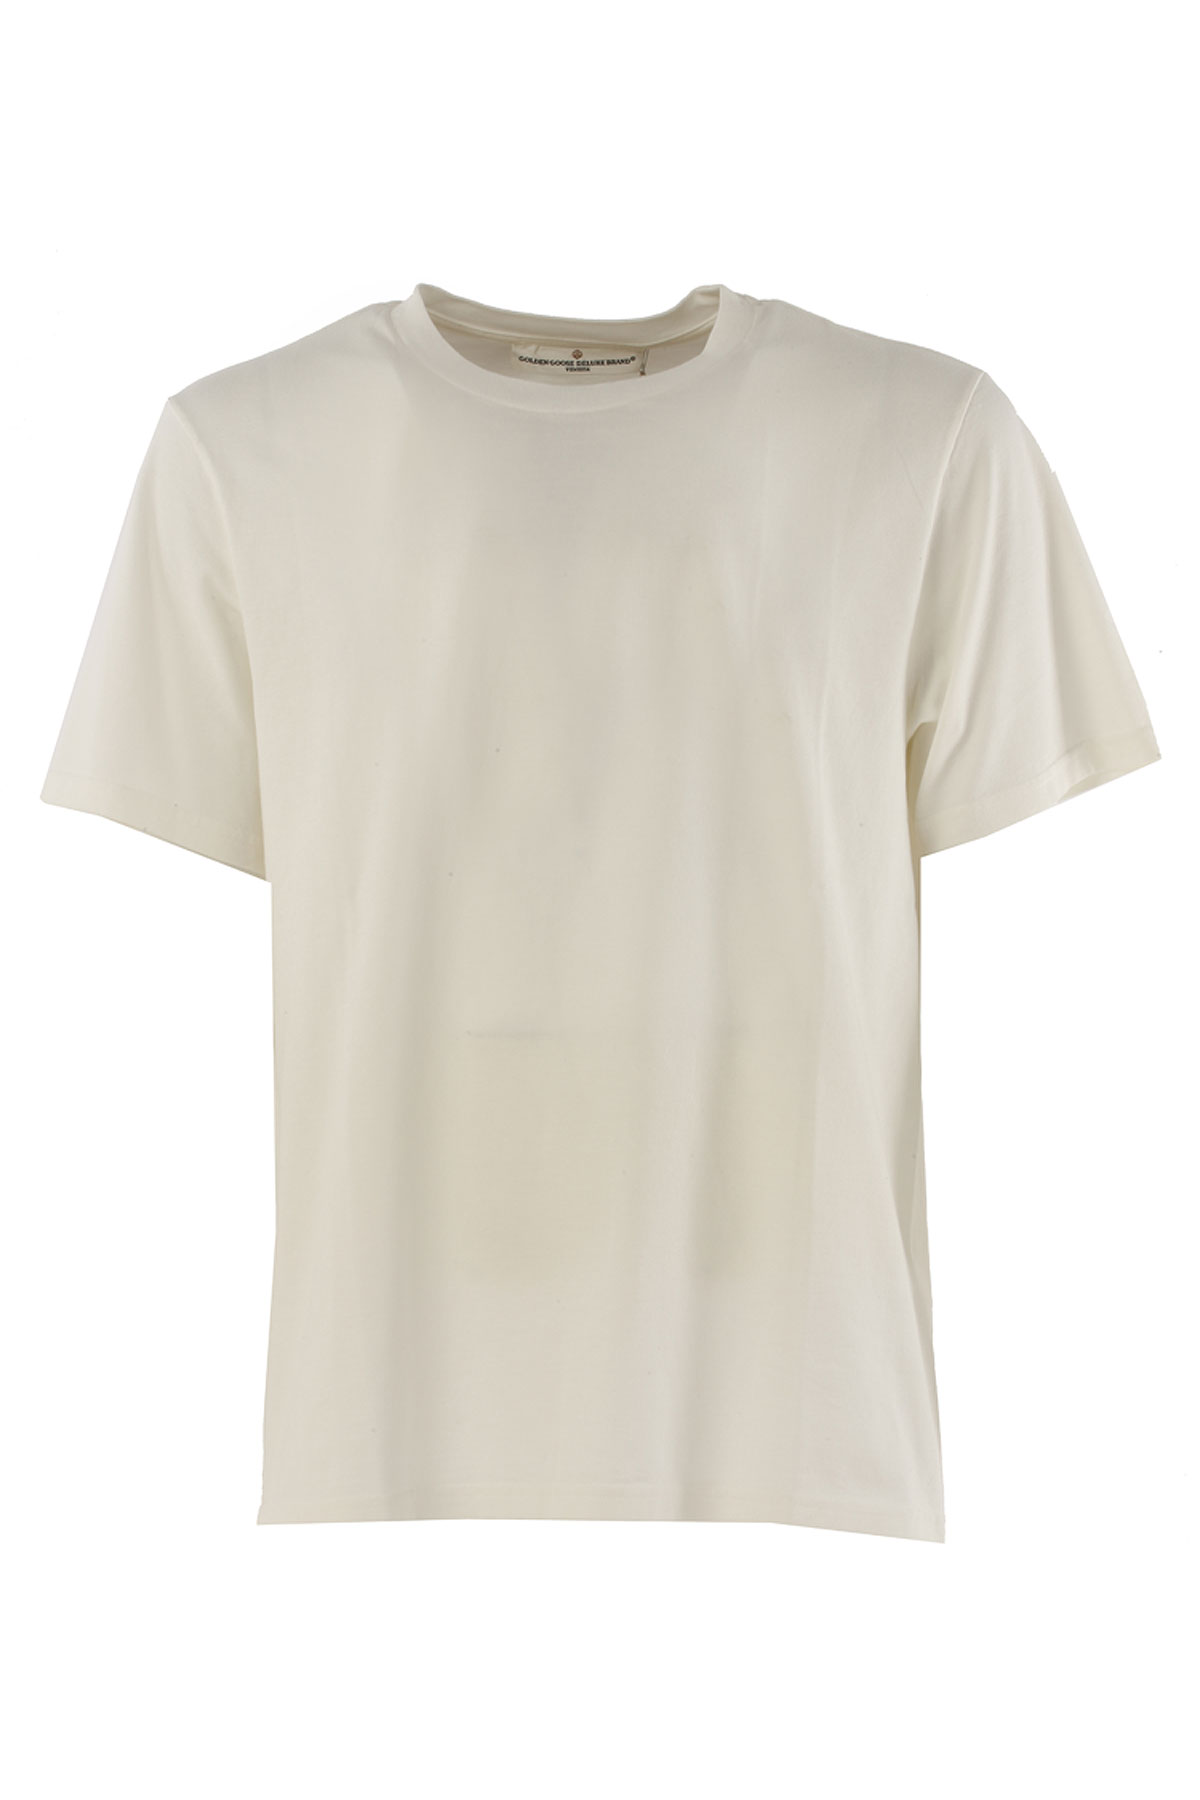 Golden Goose T-shirt Homme , Blanc, Coton, 2017, L M S